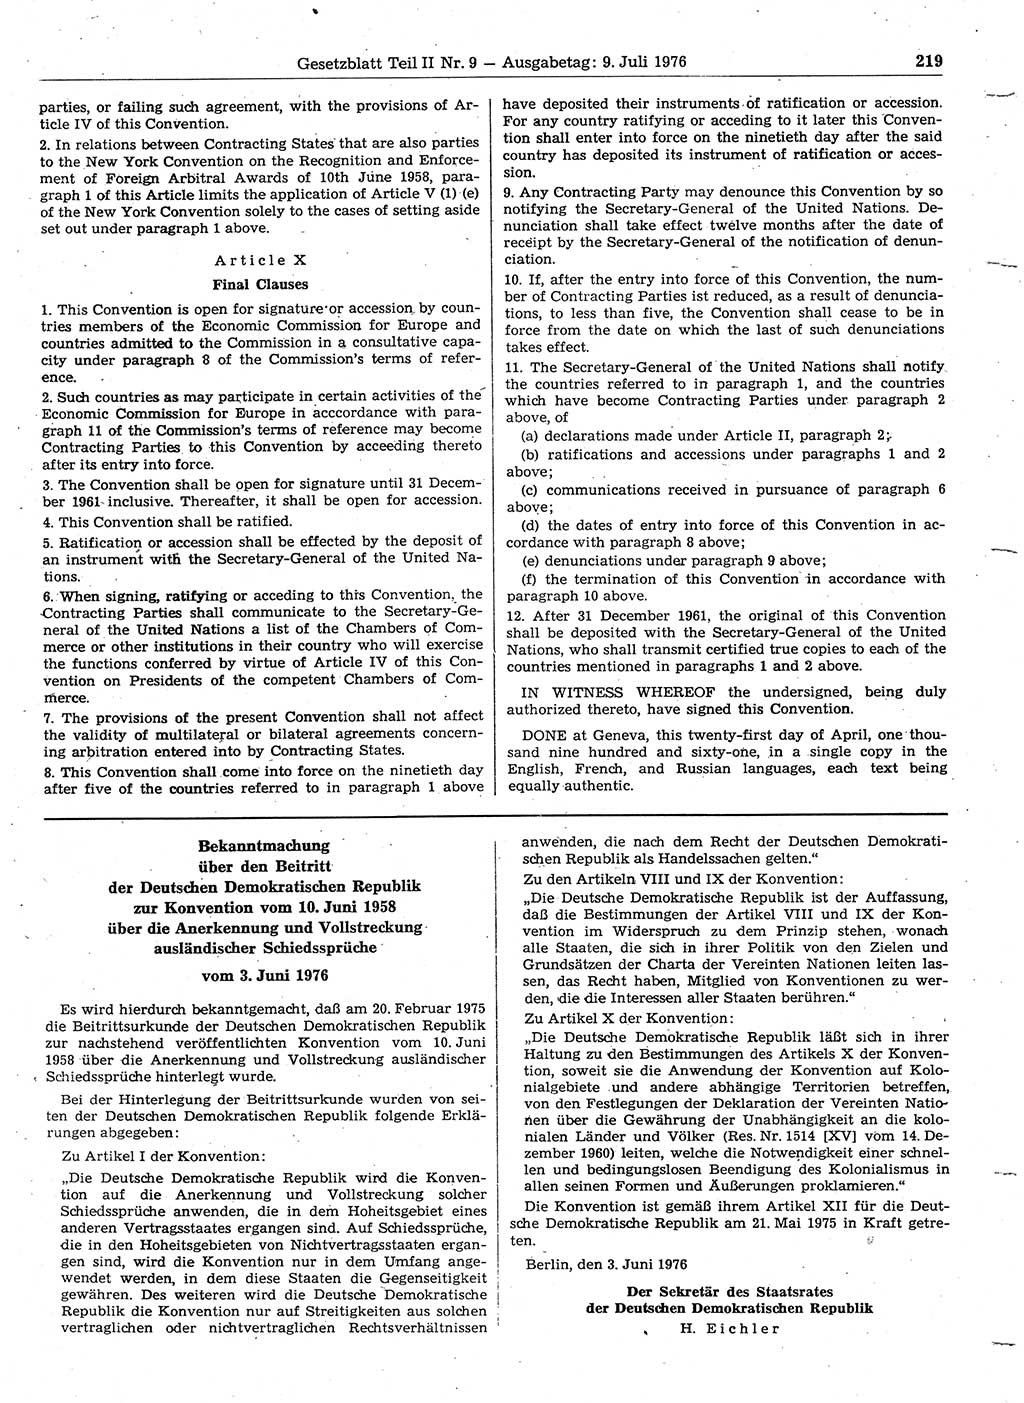 Gesetzblatt (GBl.) der Deutschen Demokratischen Republik (DDR) Teil ⅠⅠ 1976, Seite 219 (GBl. DDR ⅠⅠ 1976, S. 219)